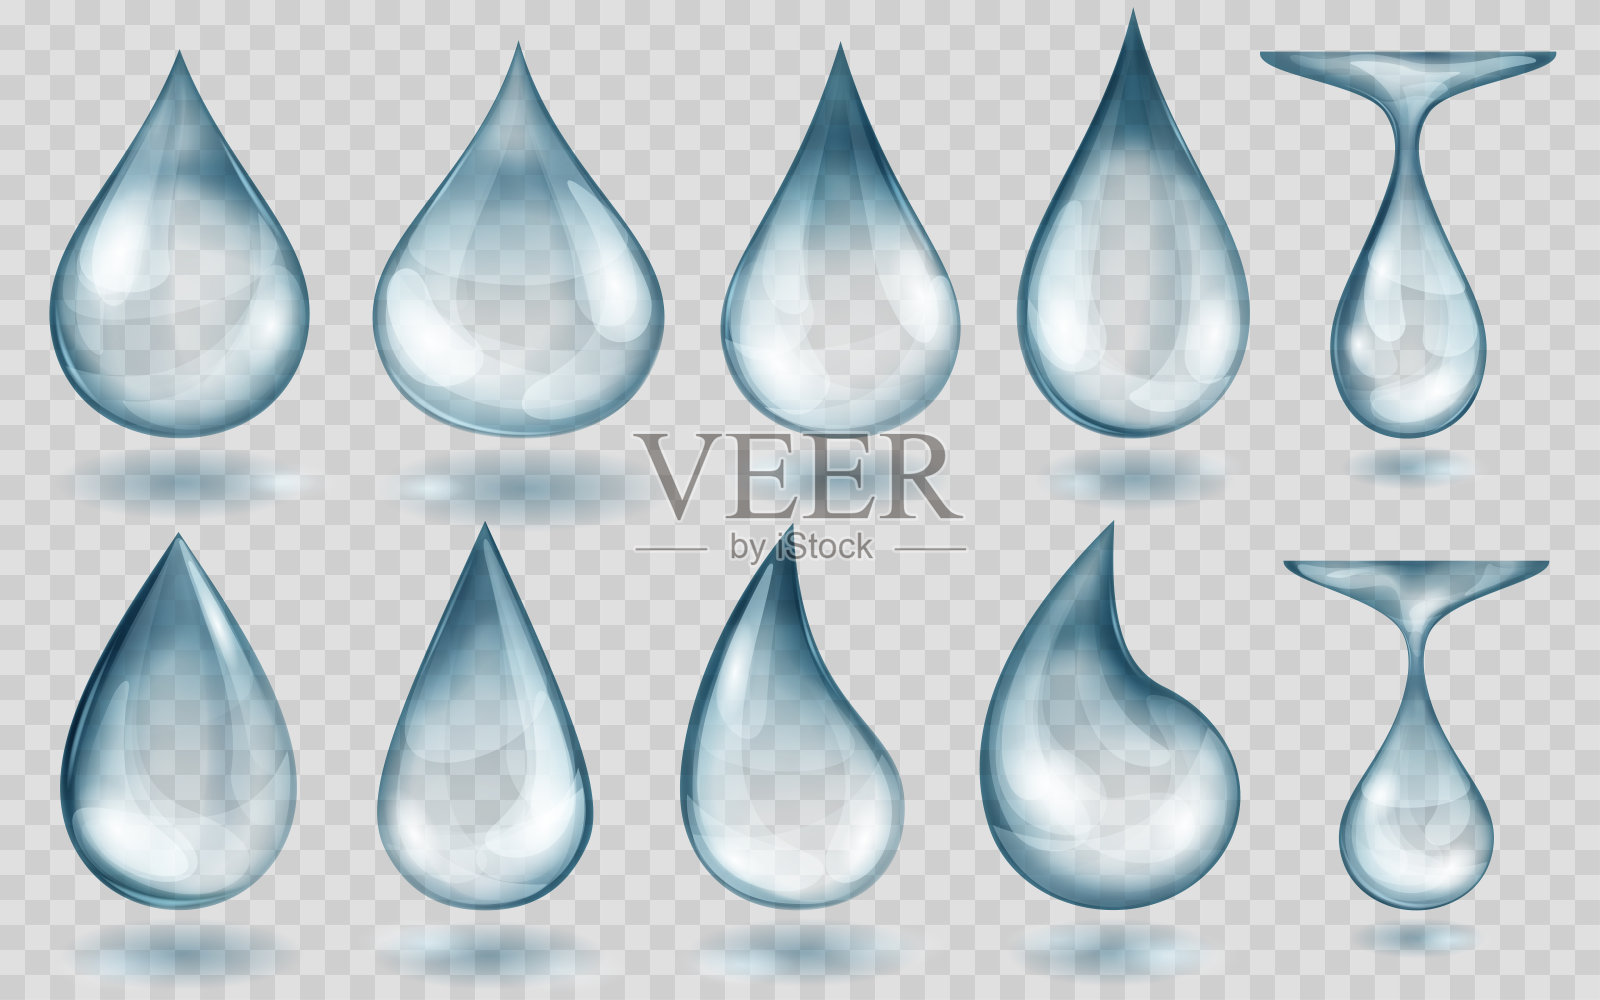 半透明的淡蓝色水滴设计元素图片